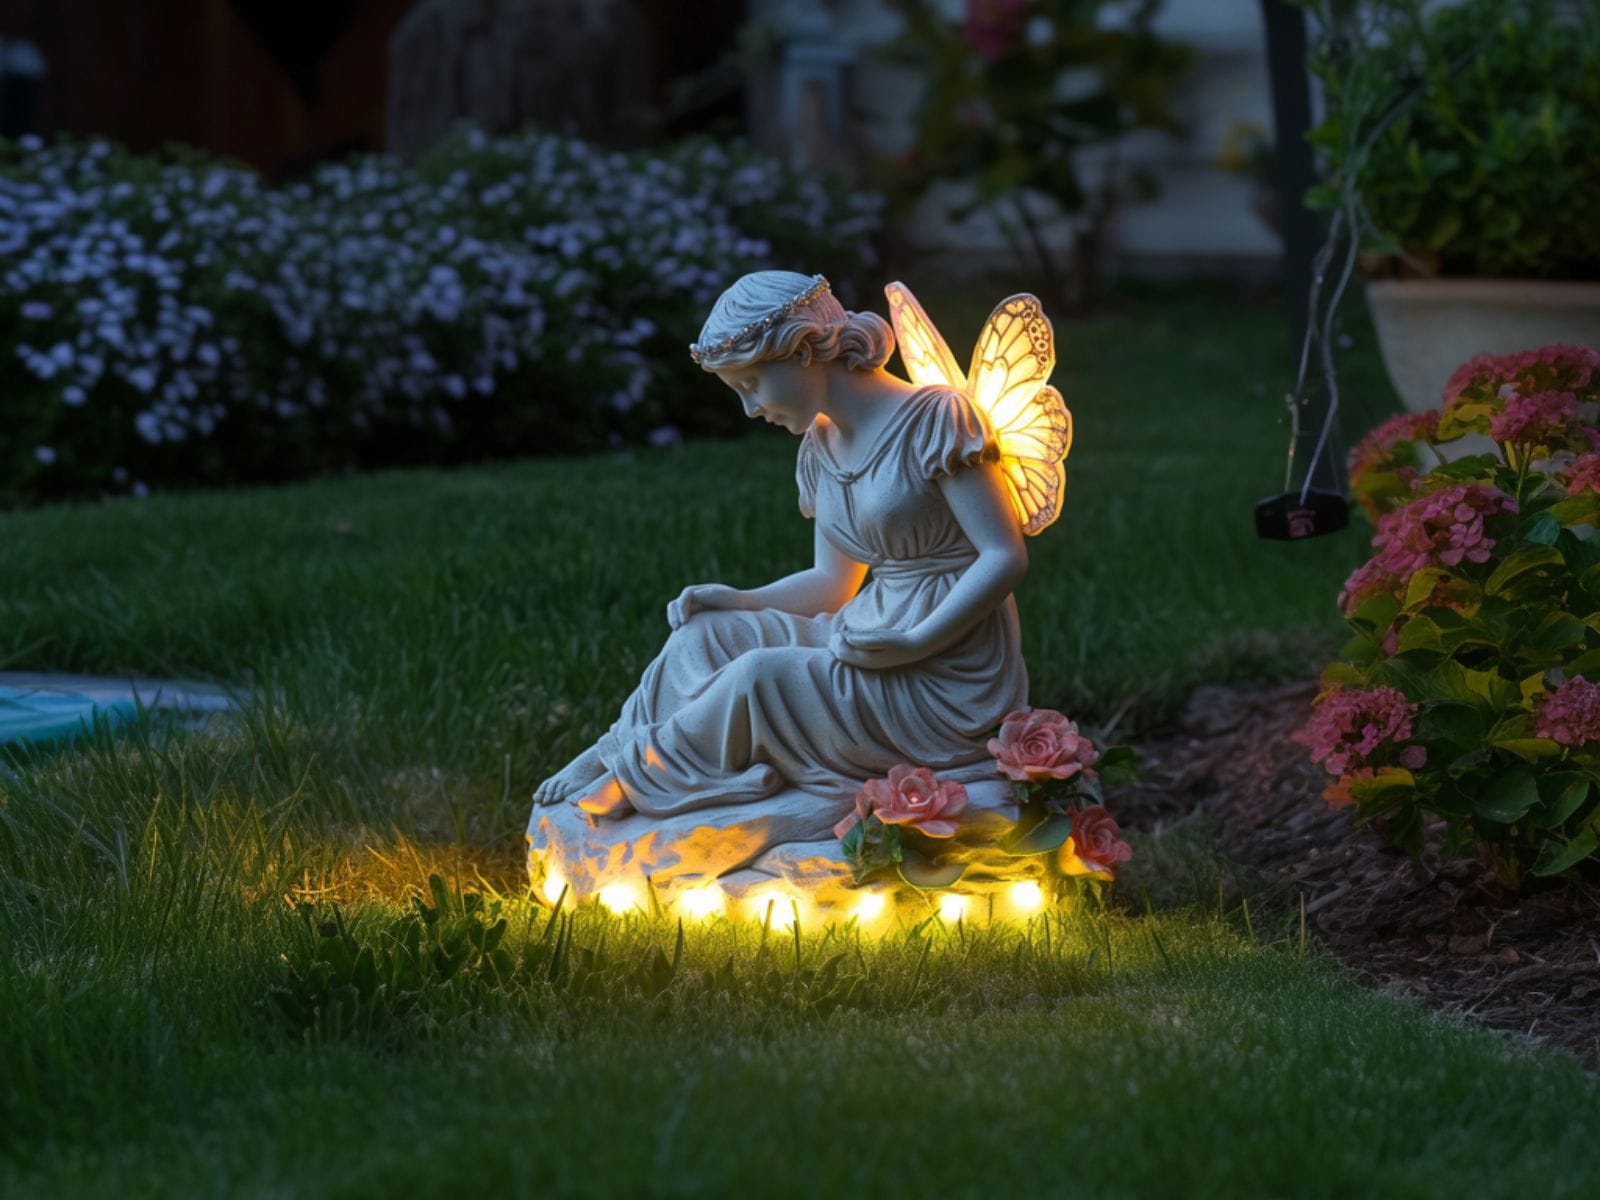 LED lights adorning a garden sculpture